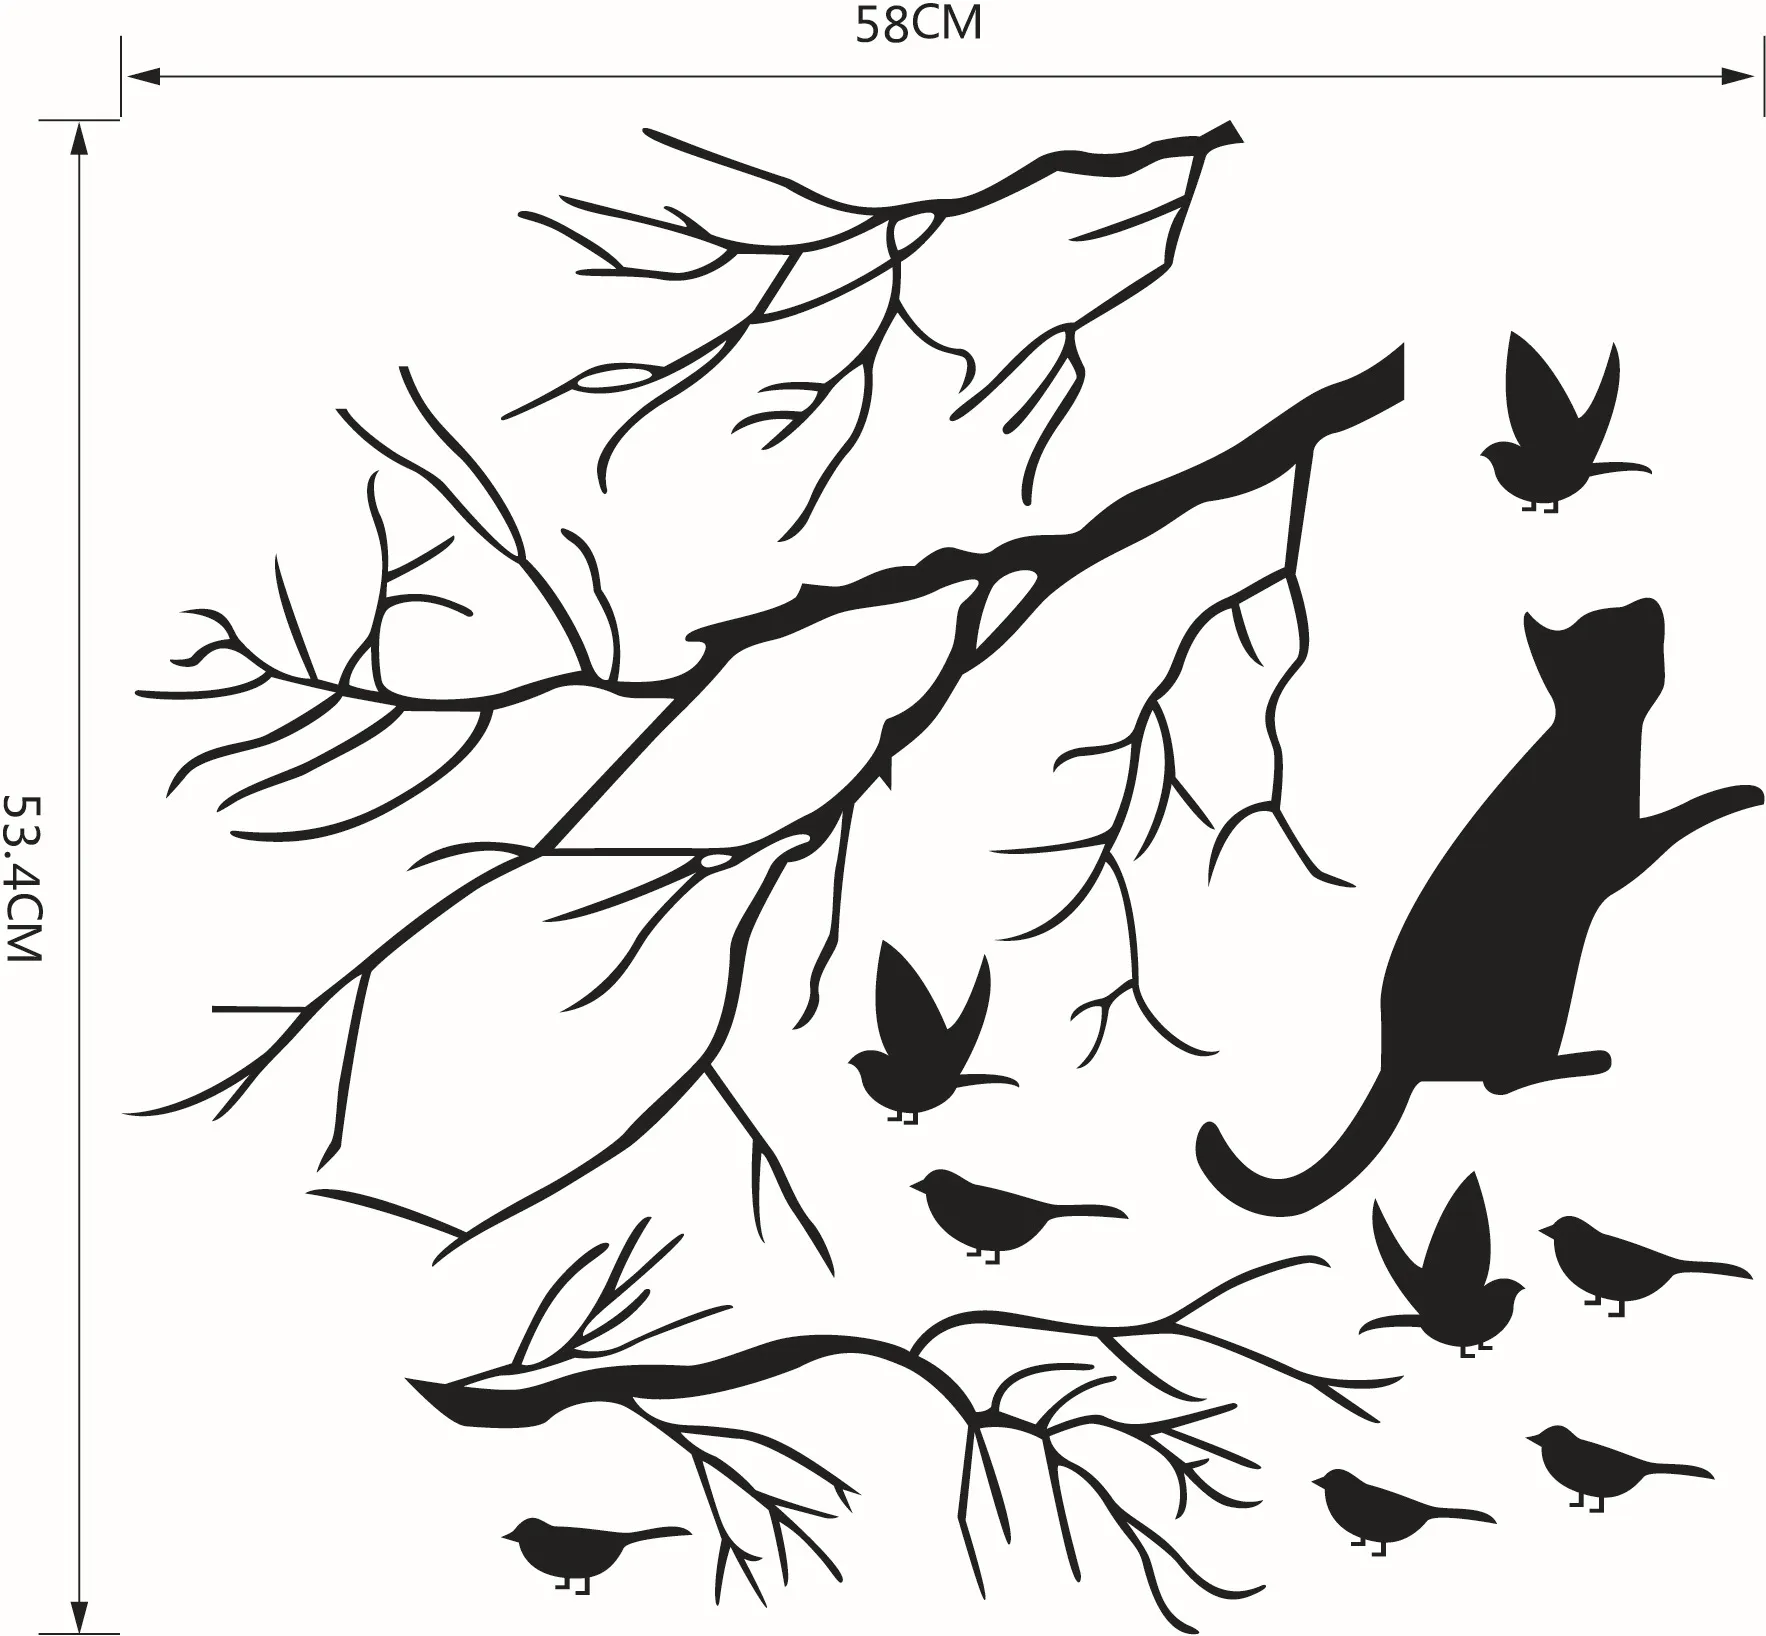 Gato perseguindo os pássaros sob o adesivo de decalque da parede da árvore, pássaro preto no ramo da árvore Arte da parede Mural Janela de vidro Deco1154522